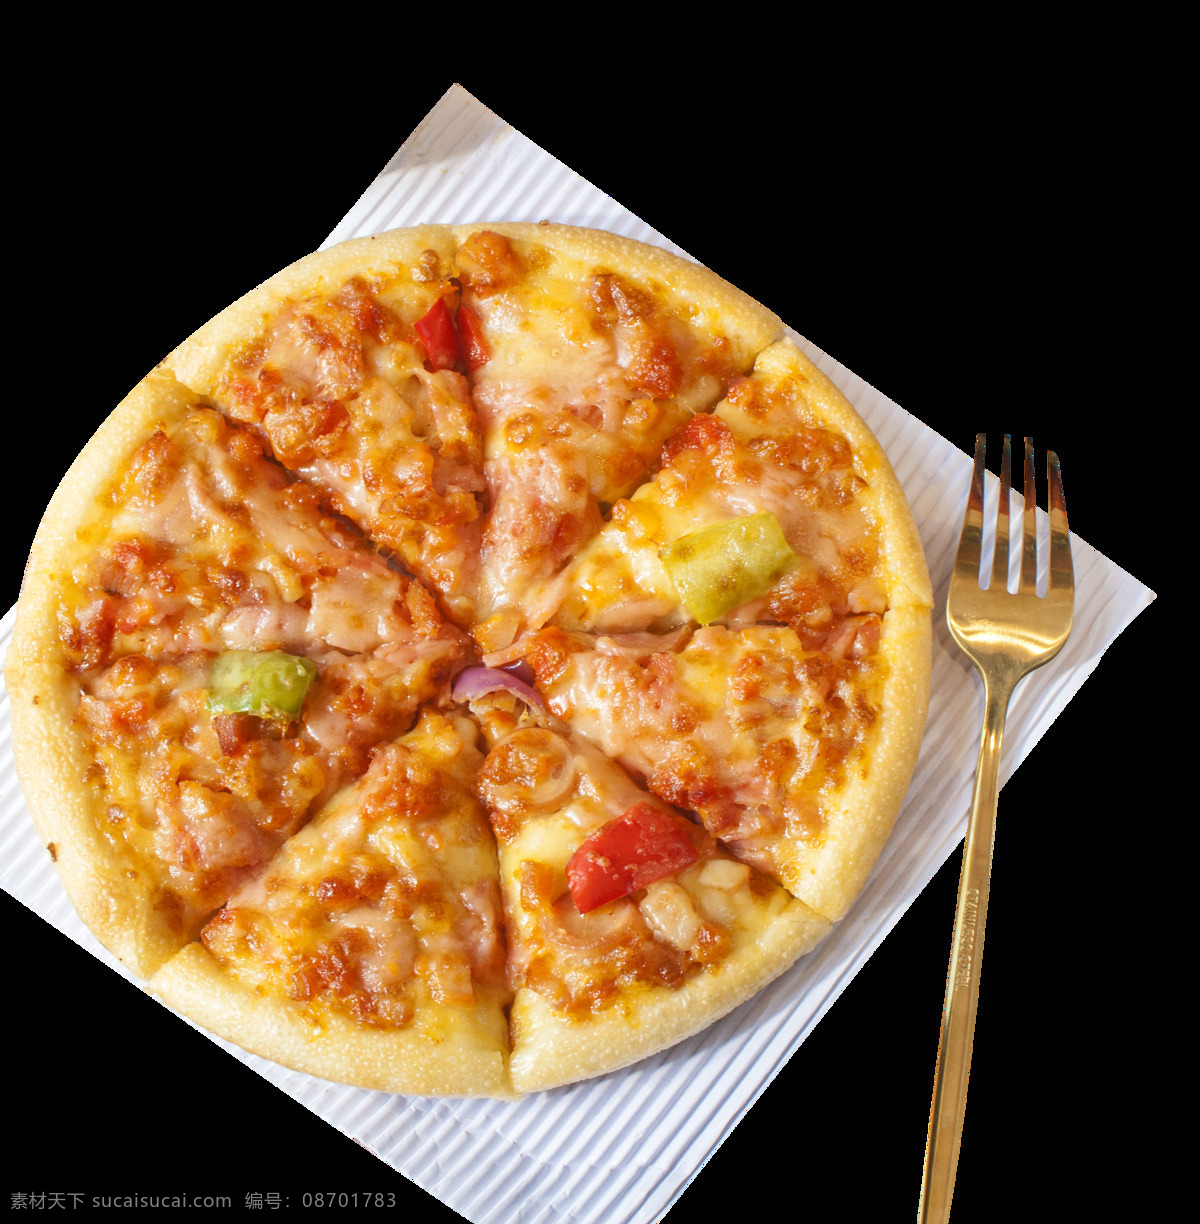 披萨图片 披萨 披萨饼 美味 快餐 面食 食物 饮食